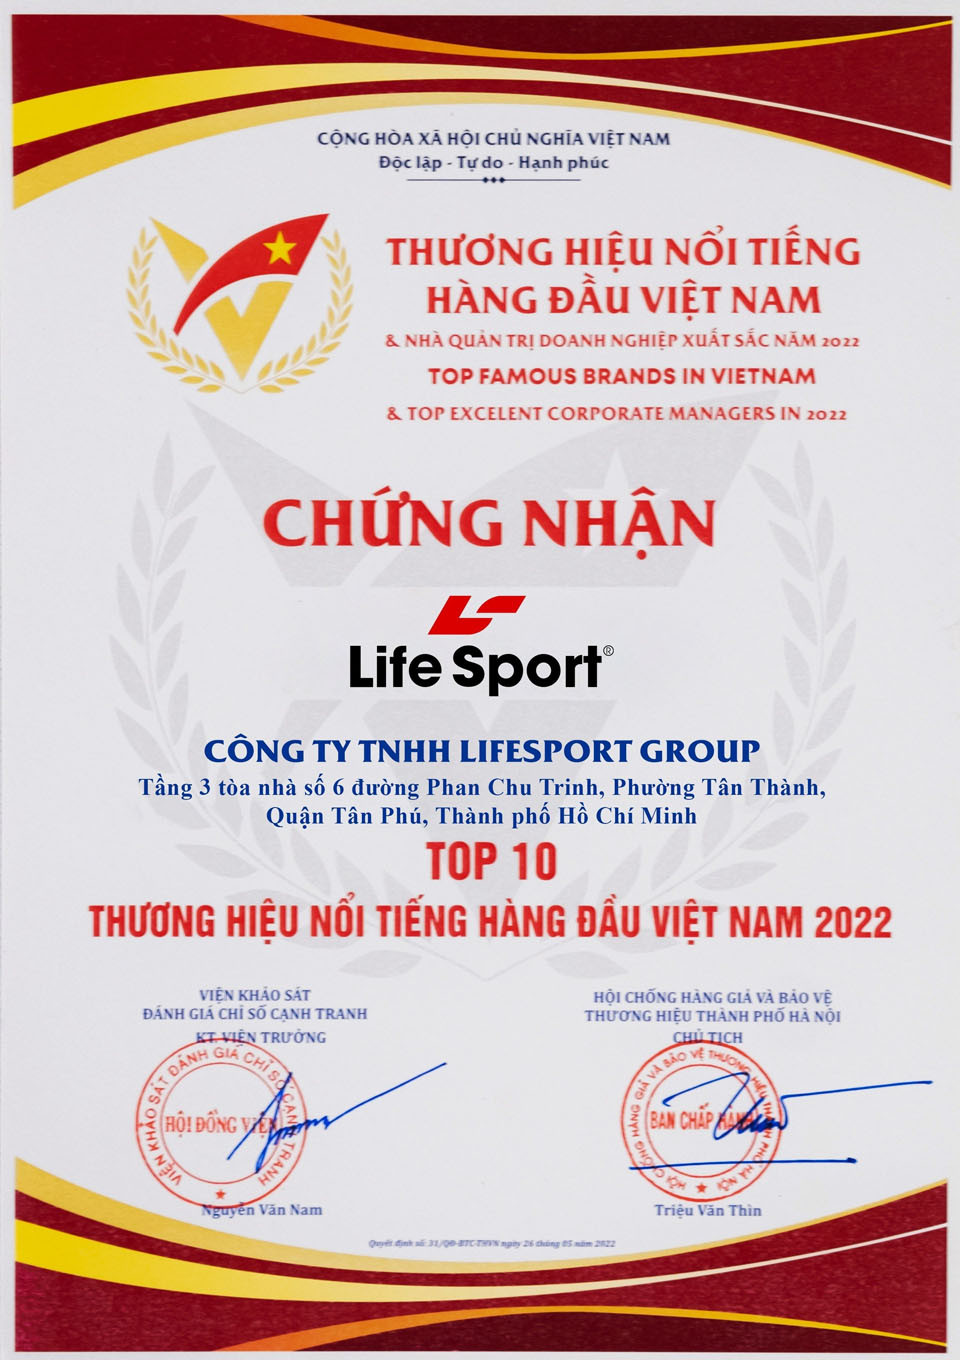 chung nhan lifesport top 10 thuong hieu noi tieng